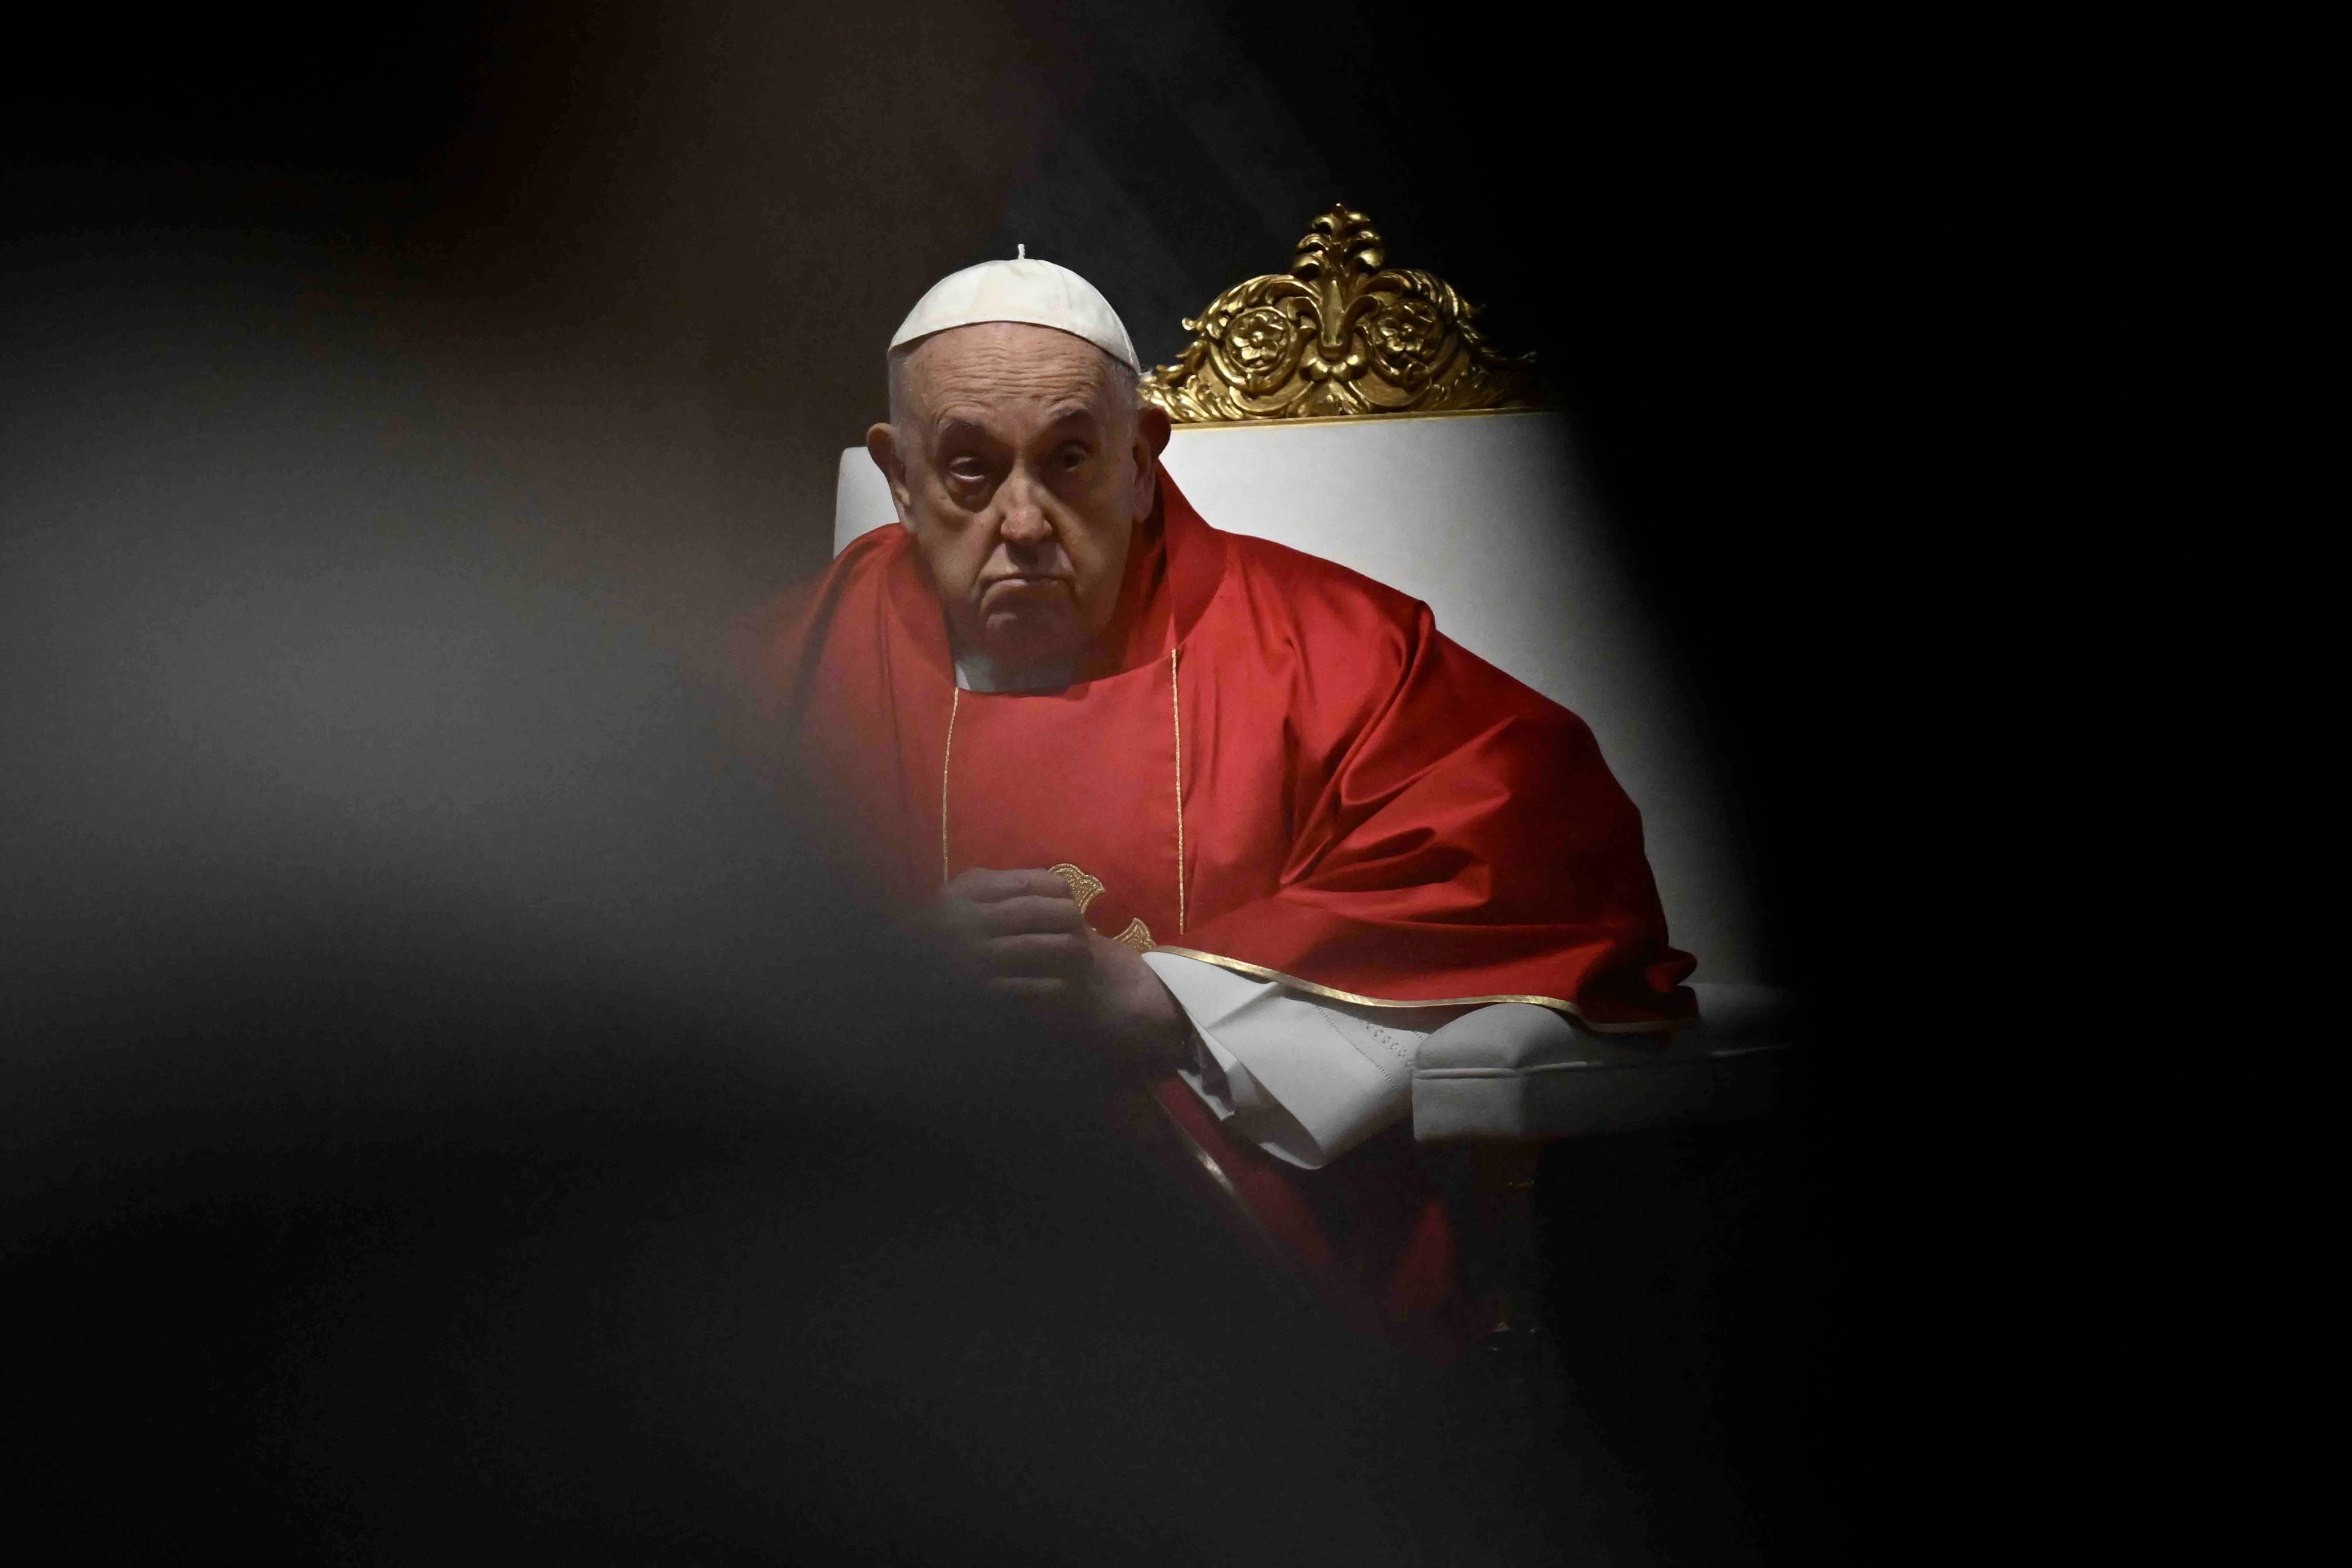 Papież w czerwonej szacie i białym birecie siedzi na fotelu podczas mszy.